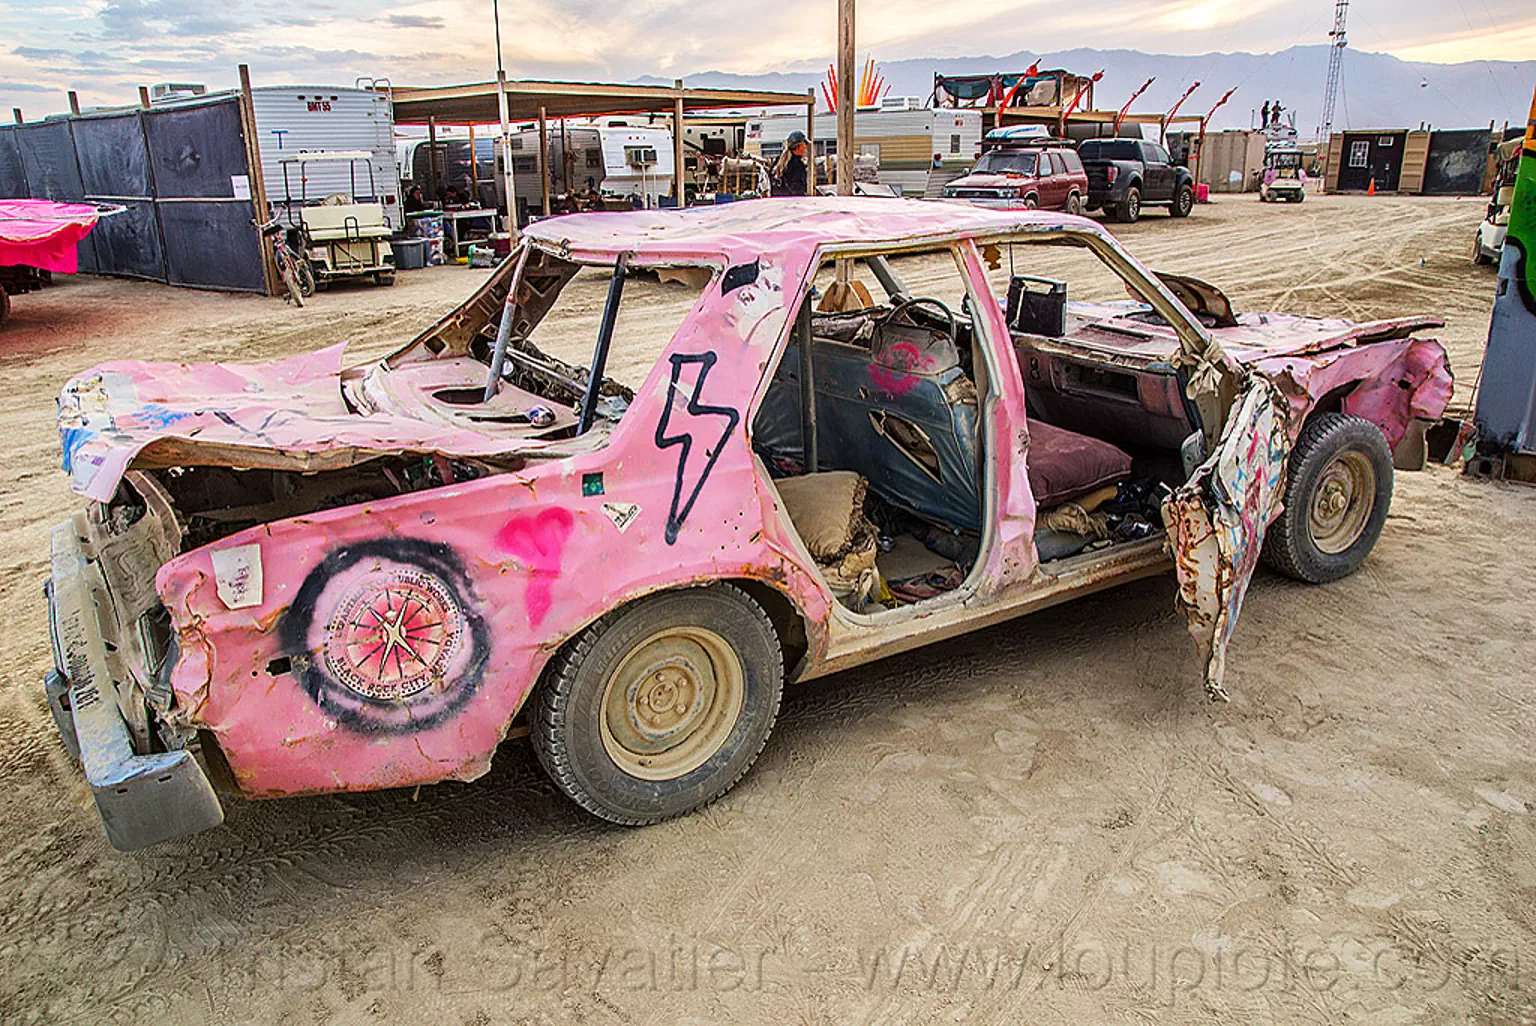 DPW wrecked pink car - burning man 2016, art car, burning man, mutant vehicles, pink car, wreck